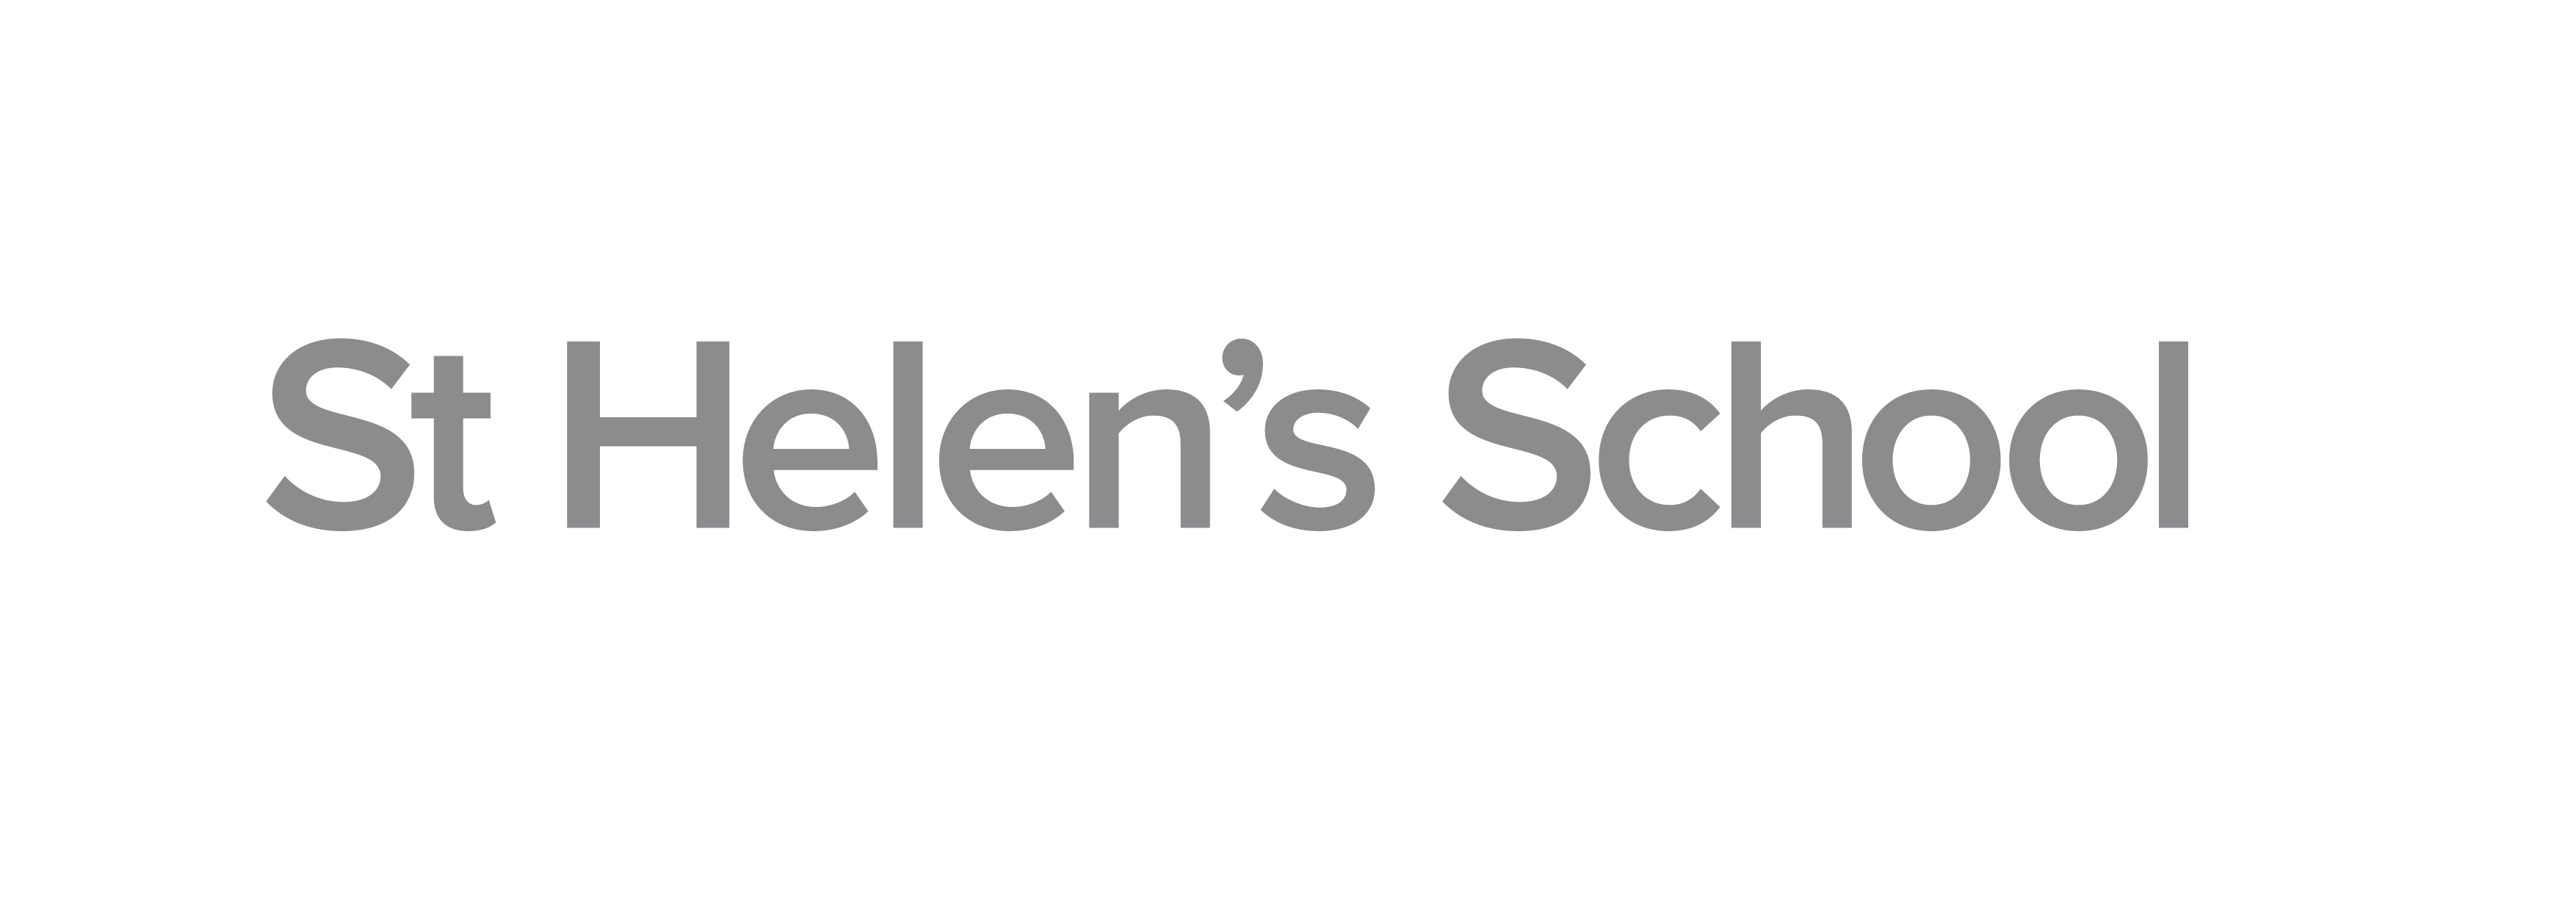 St Helen's School